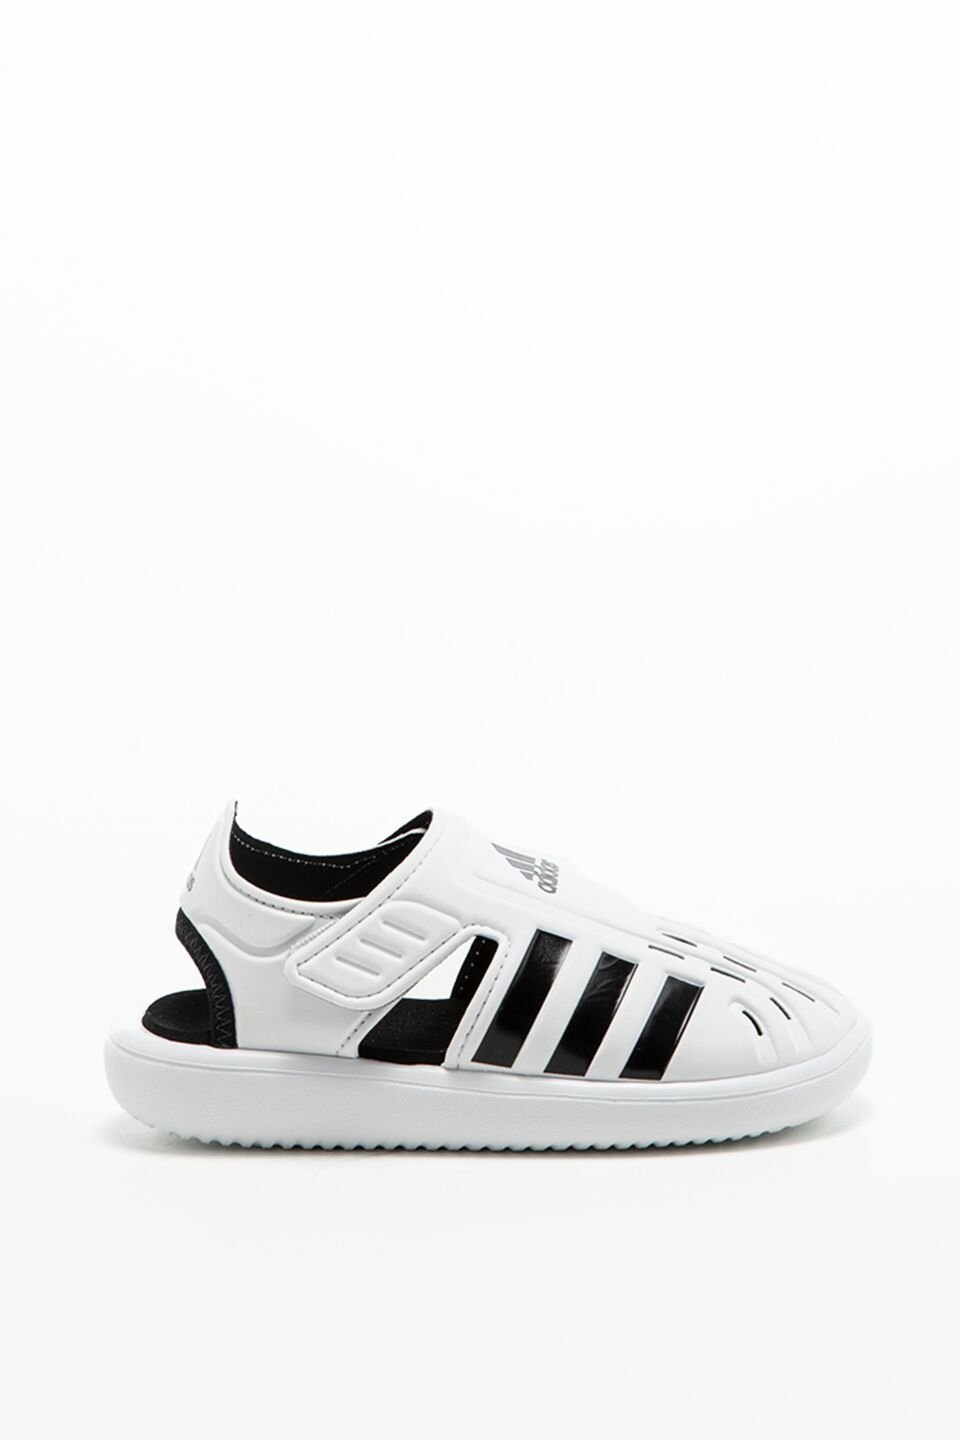 נעלי סניקרס אדידס לילדים Adidas Toe Water - לבן/שחור